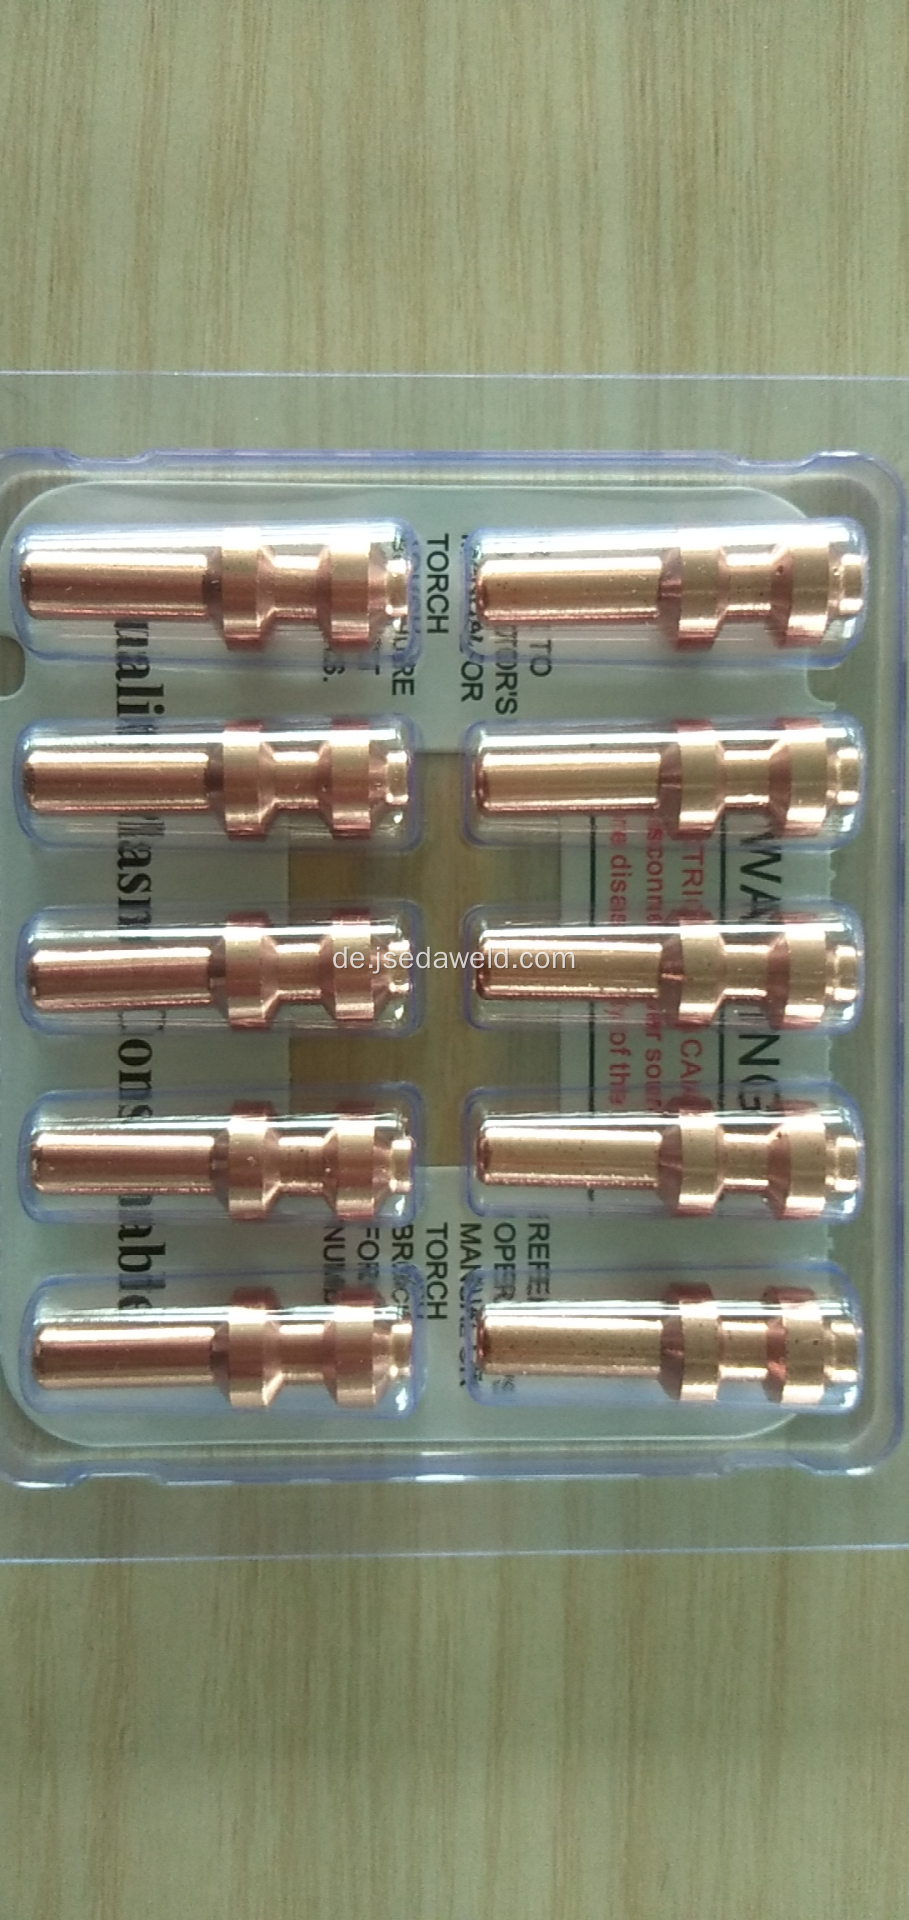 Plasmaschneidelektrode 256026 für Plasmabrenner